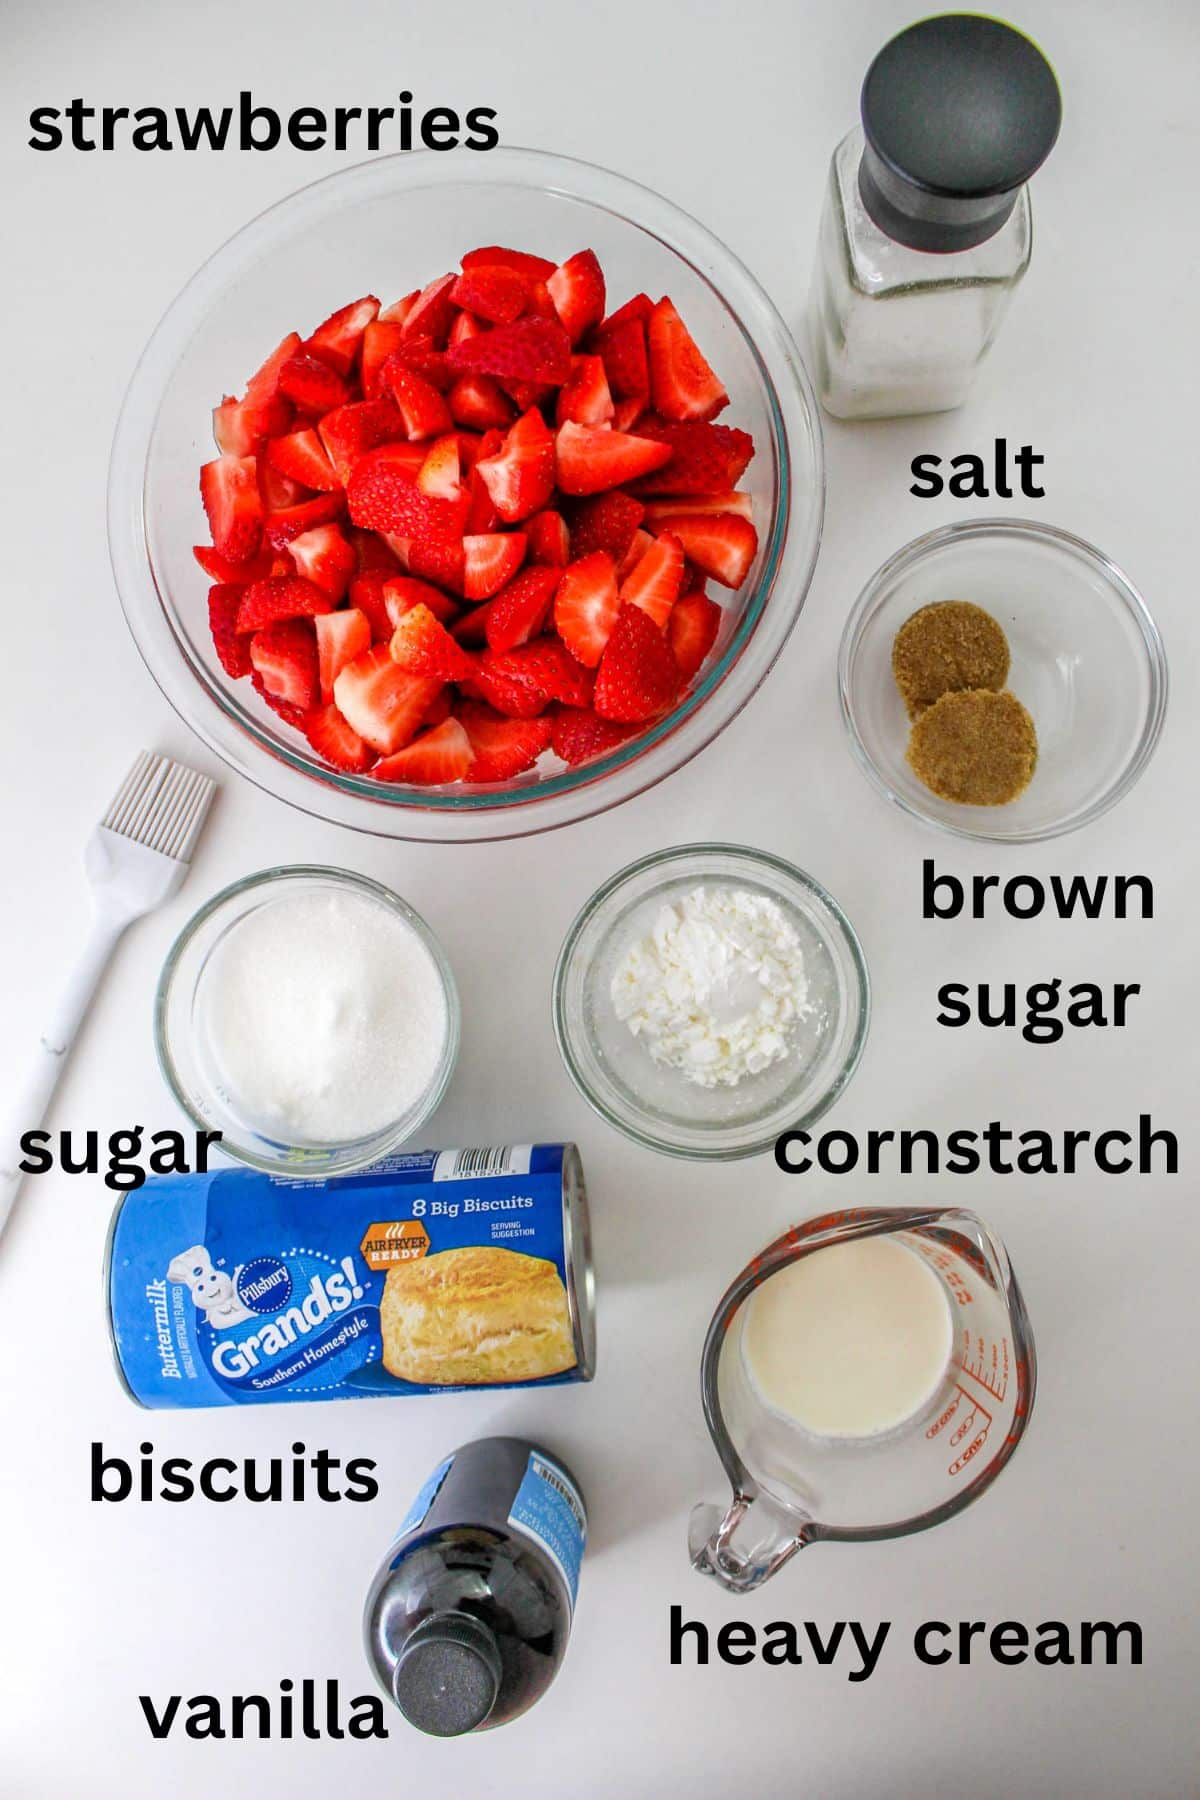 strawberries, salt, brown sugar, sugar, biscuits, vanilla, heavy cream and cornstarch on a white backdrop